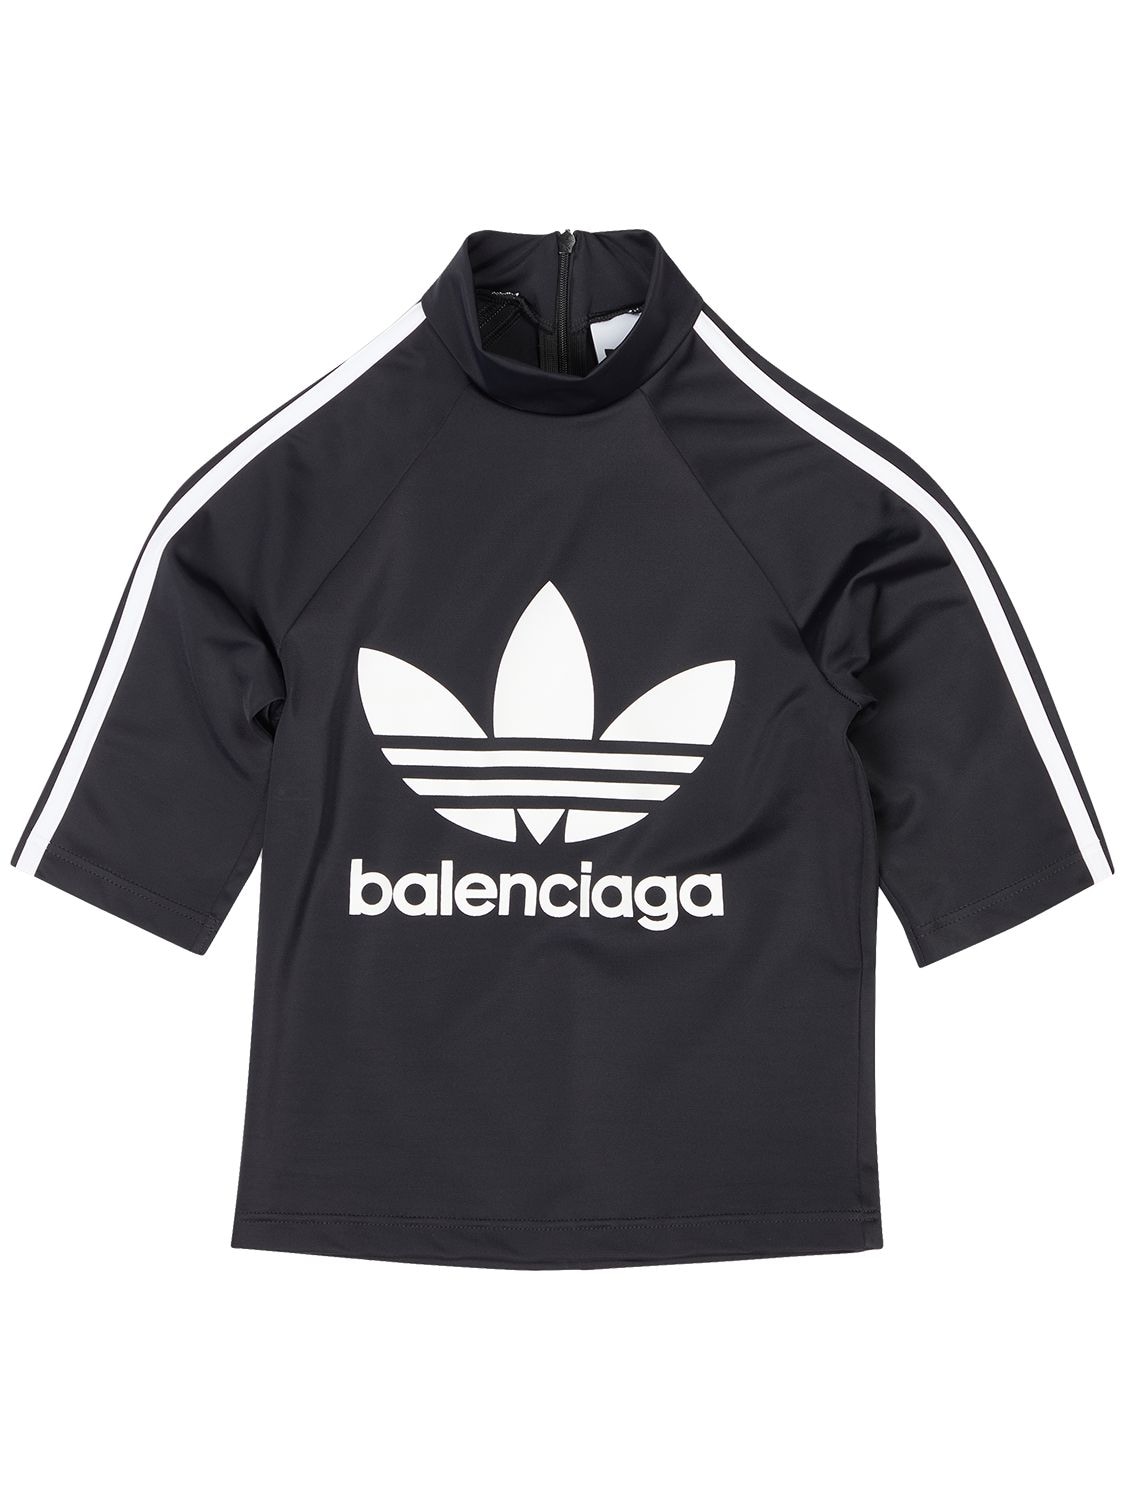 Adidas Athletic S/s Spandex Top - BALENCIAGA - Modalova